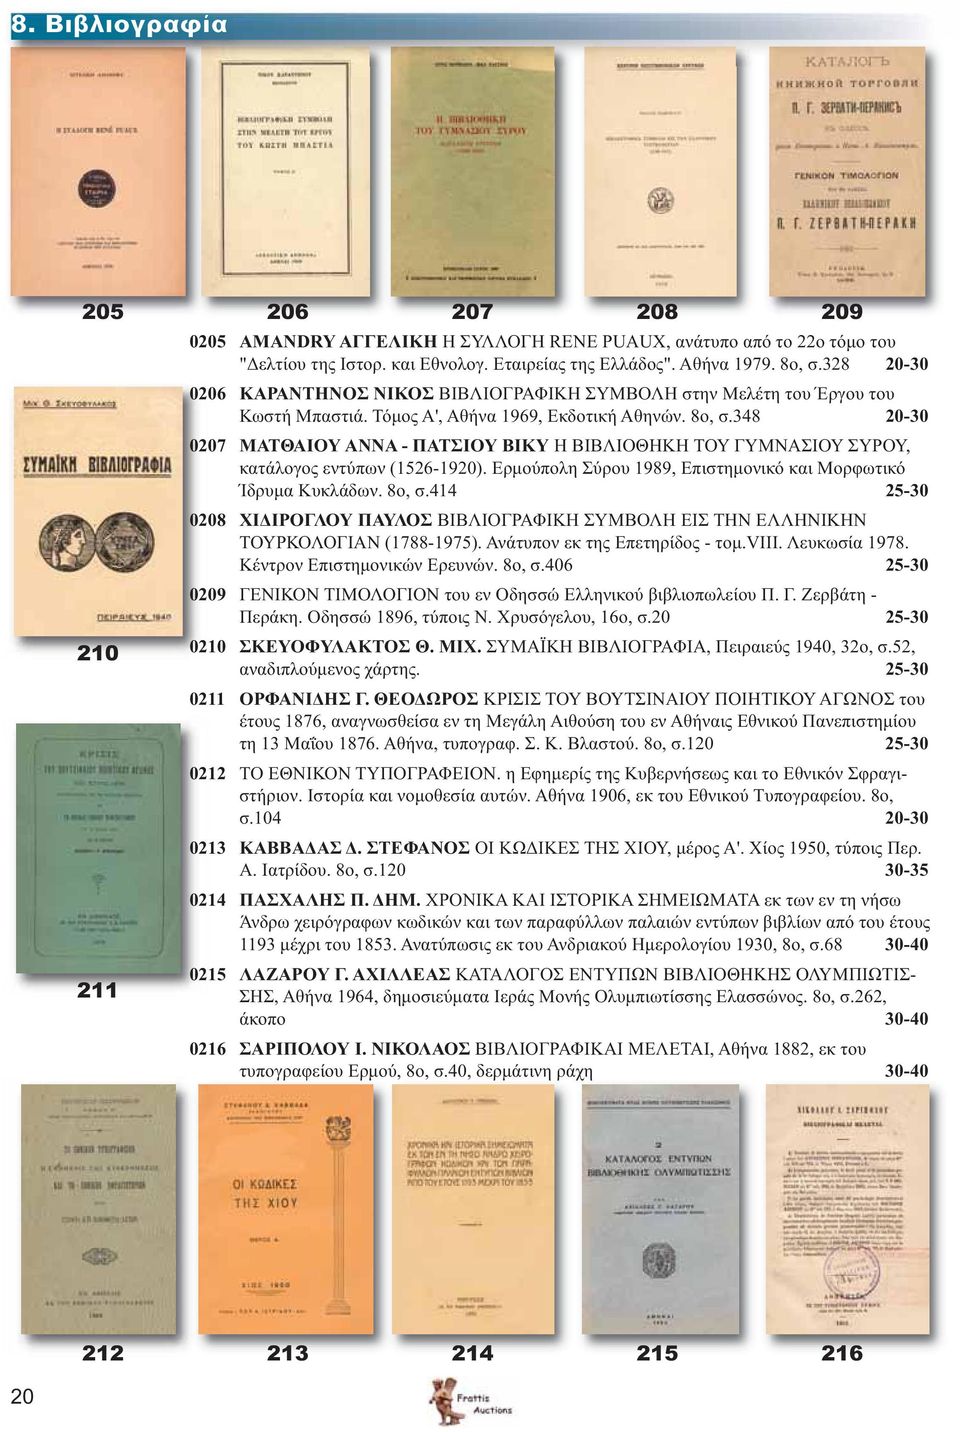 348 20-30 0207 ΜΑΤΘΑΙΟΥ ΑΝΝΑ - ΠΑΤΣΙΟΥ ΒΙΚΥ Η ΒΙΒΛΙΟΘΗΚΗ ΤΟΥ ΓΥΜΝΑΣΙΟΥ ΣΥΡΟΥ, κατάλογος εντύπων (1526-1920). Ερμούπολη Σύρου 1989, Επιστημονικό και Μορφωτικό Ίδρυμα Κυκλάδων. 8ο, σ.